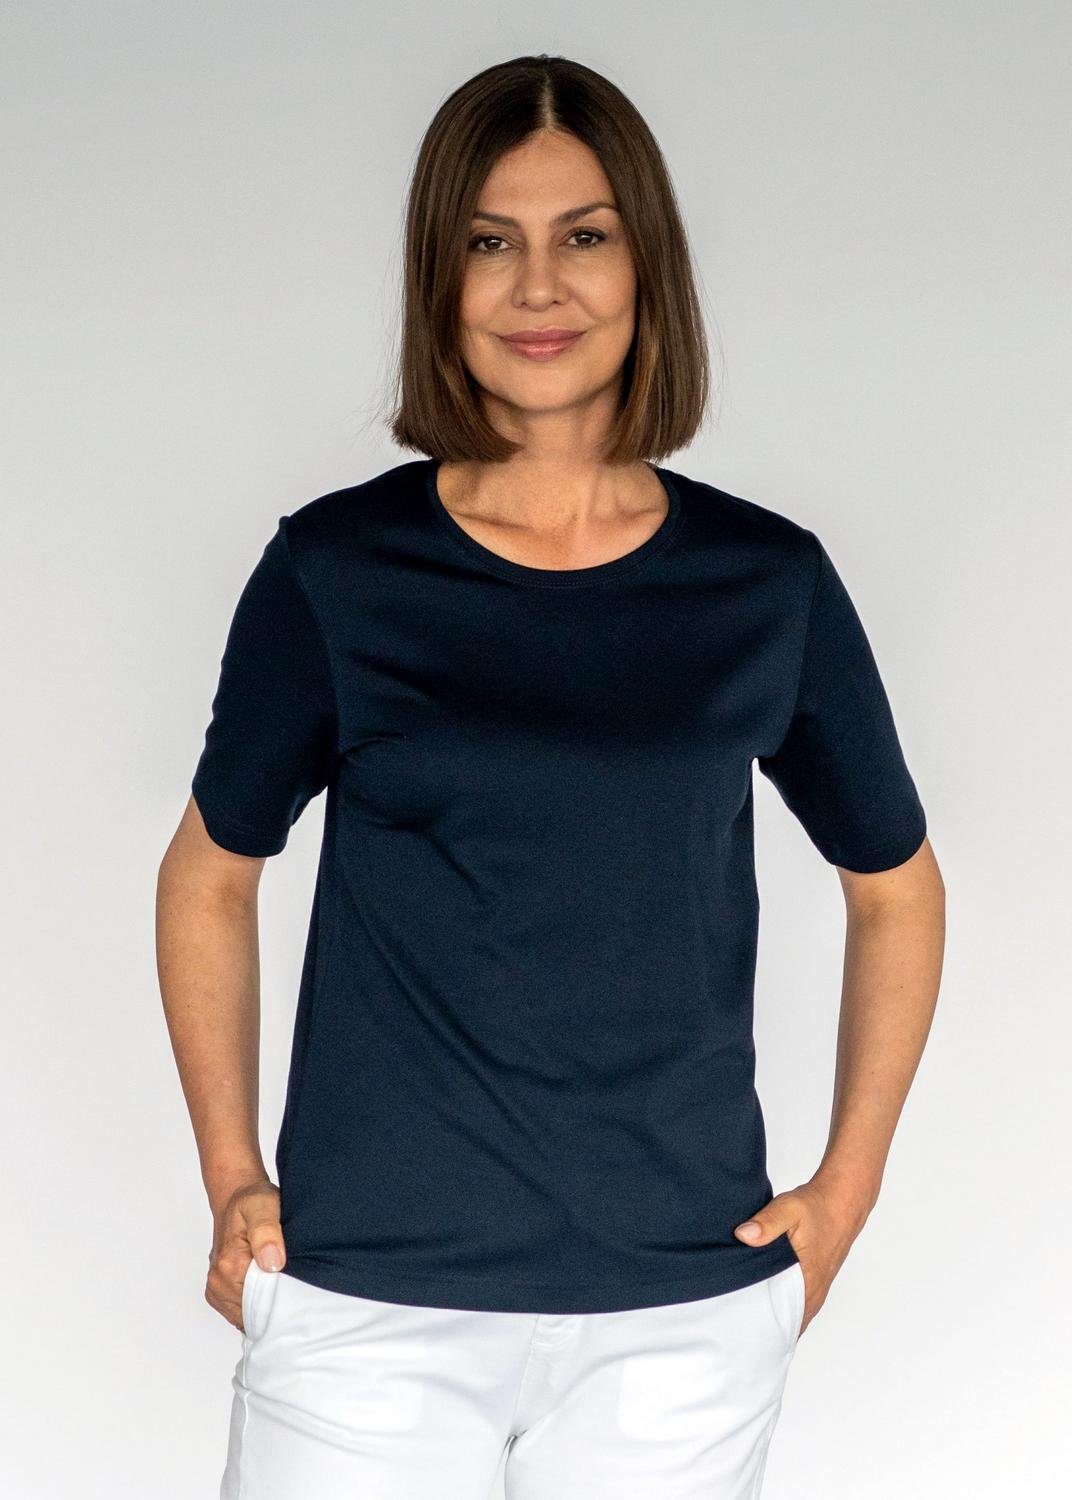 Clarina Shirts für Damen online kaufen | OTTO